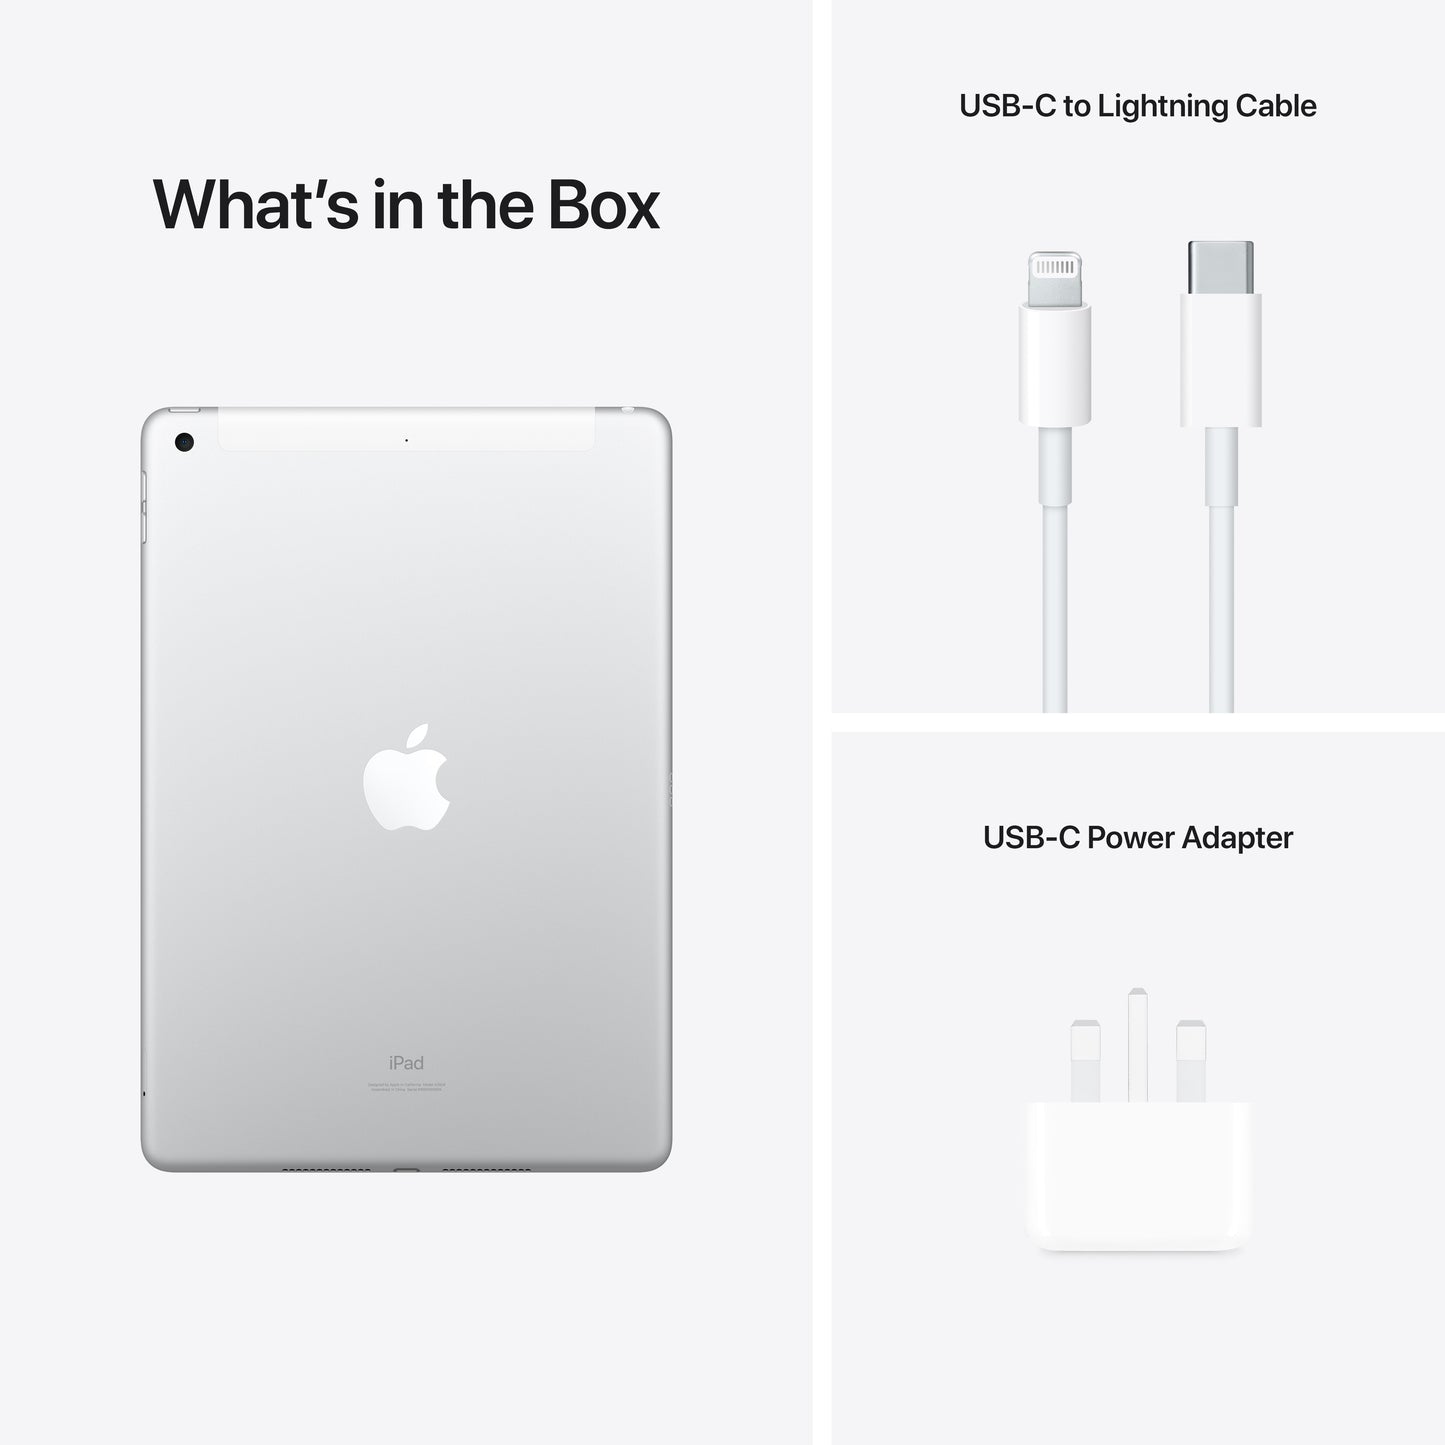 Apple iPad (9th Gen) 10.2 Wi-Fi + Cellular 256GB Silver